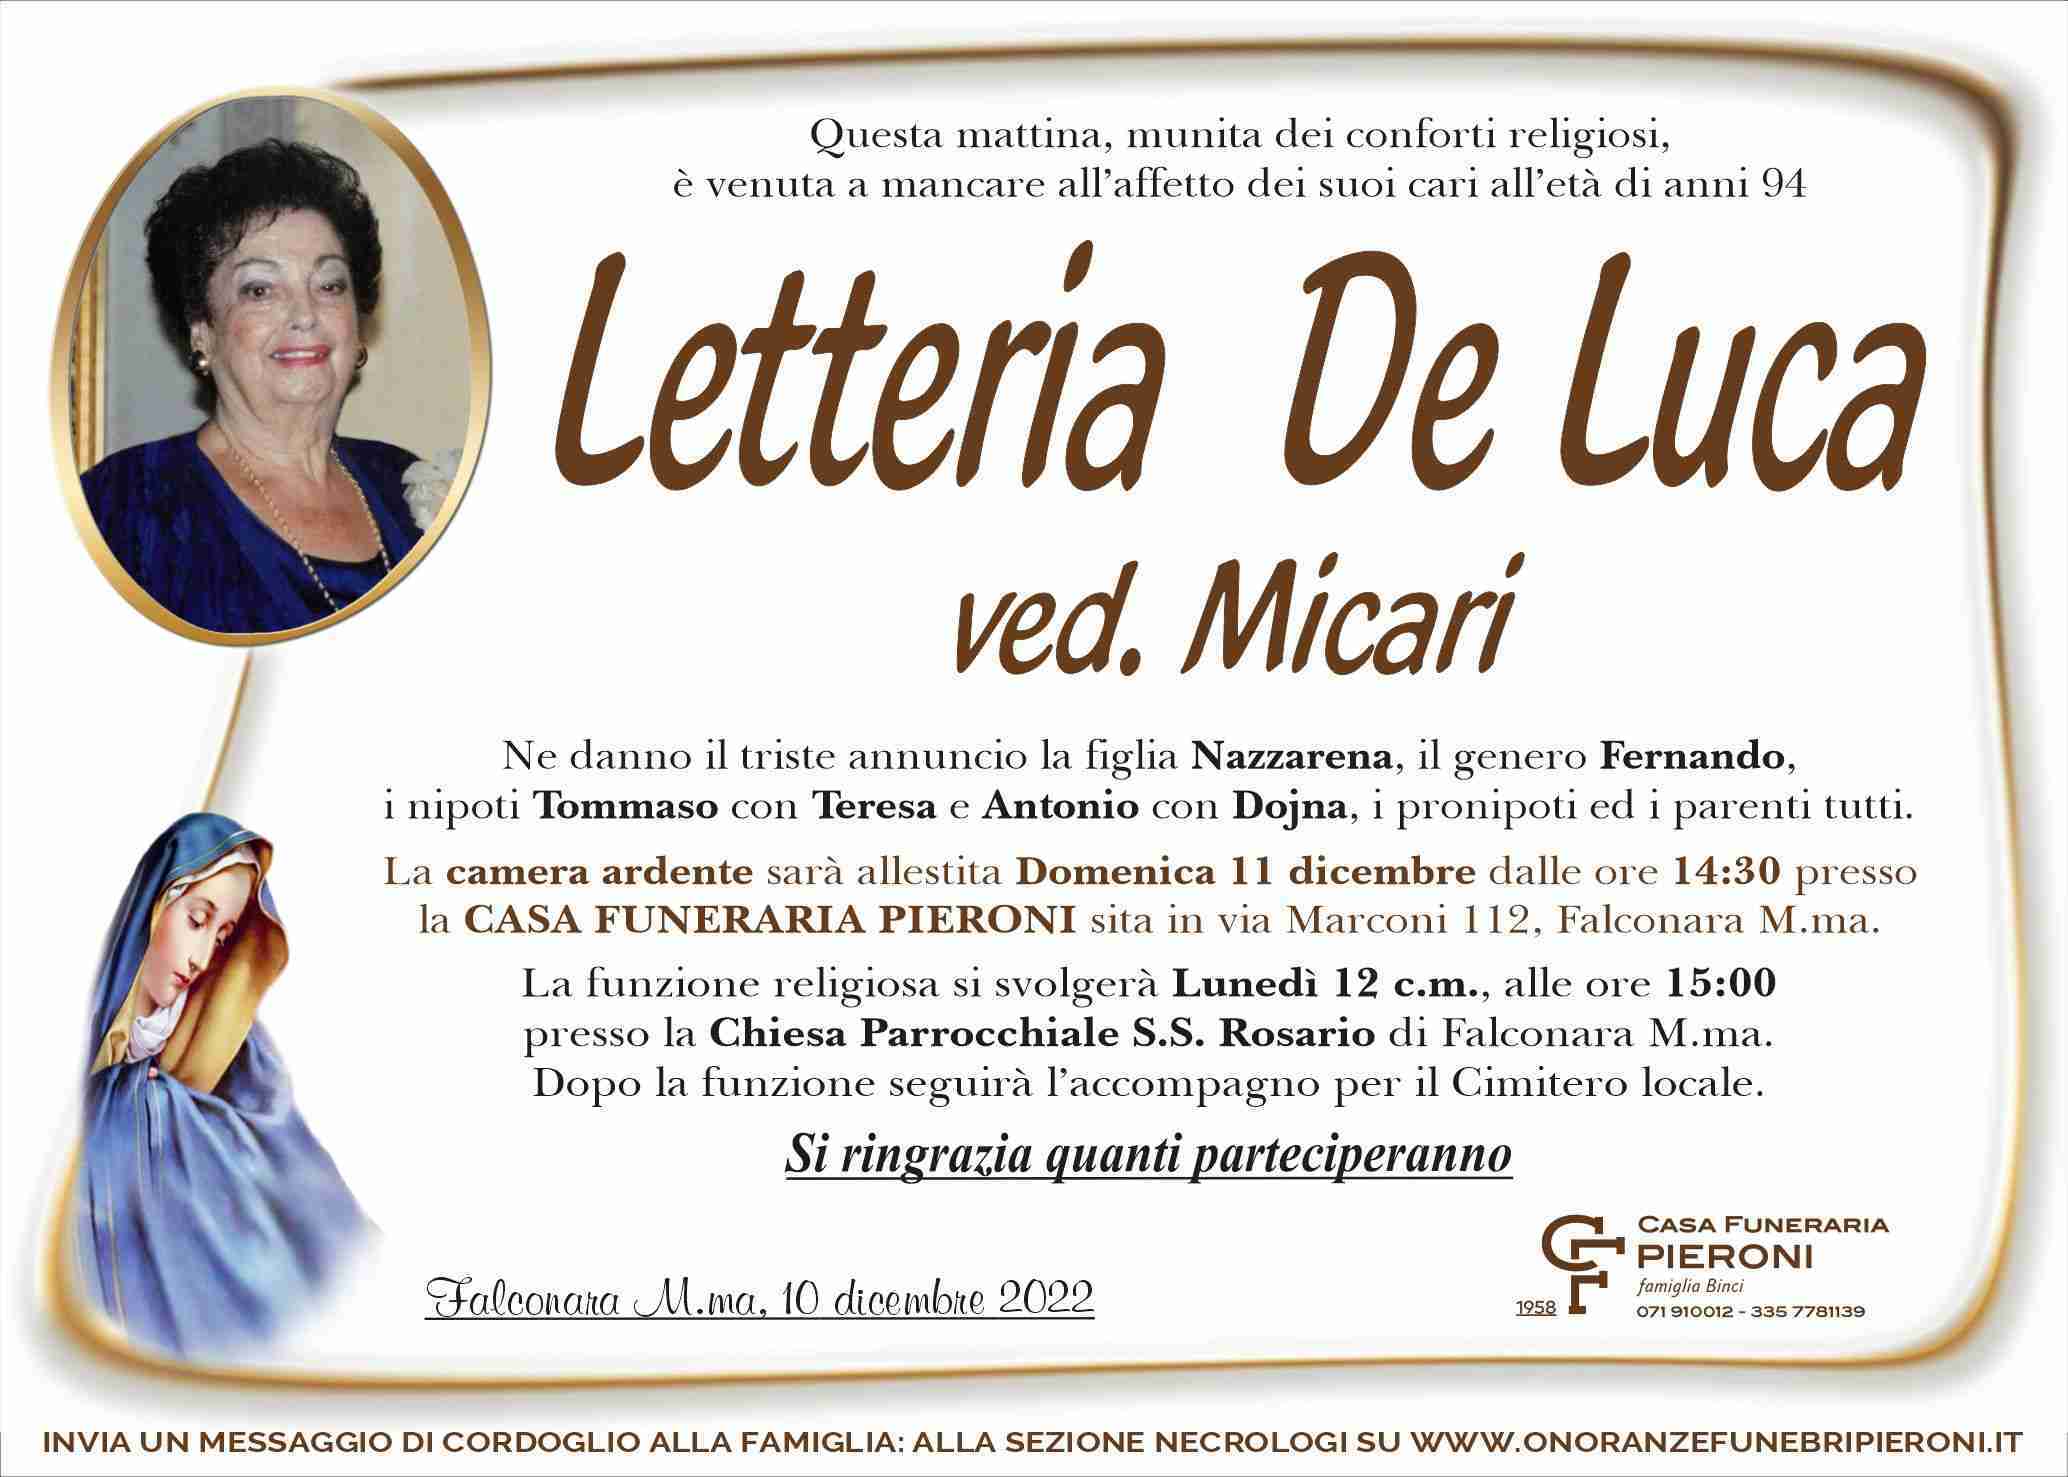 Letteria De Luca